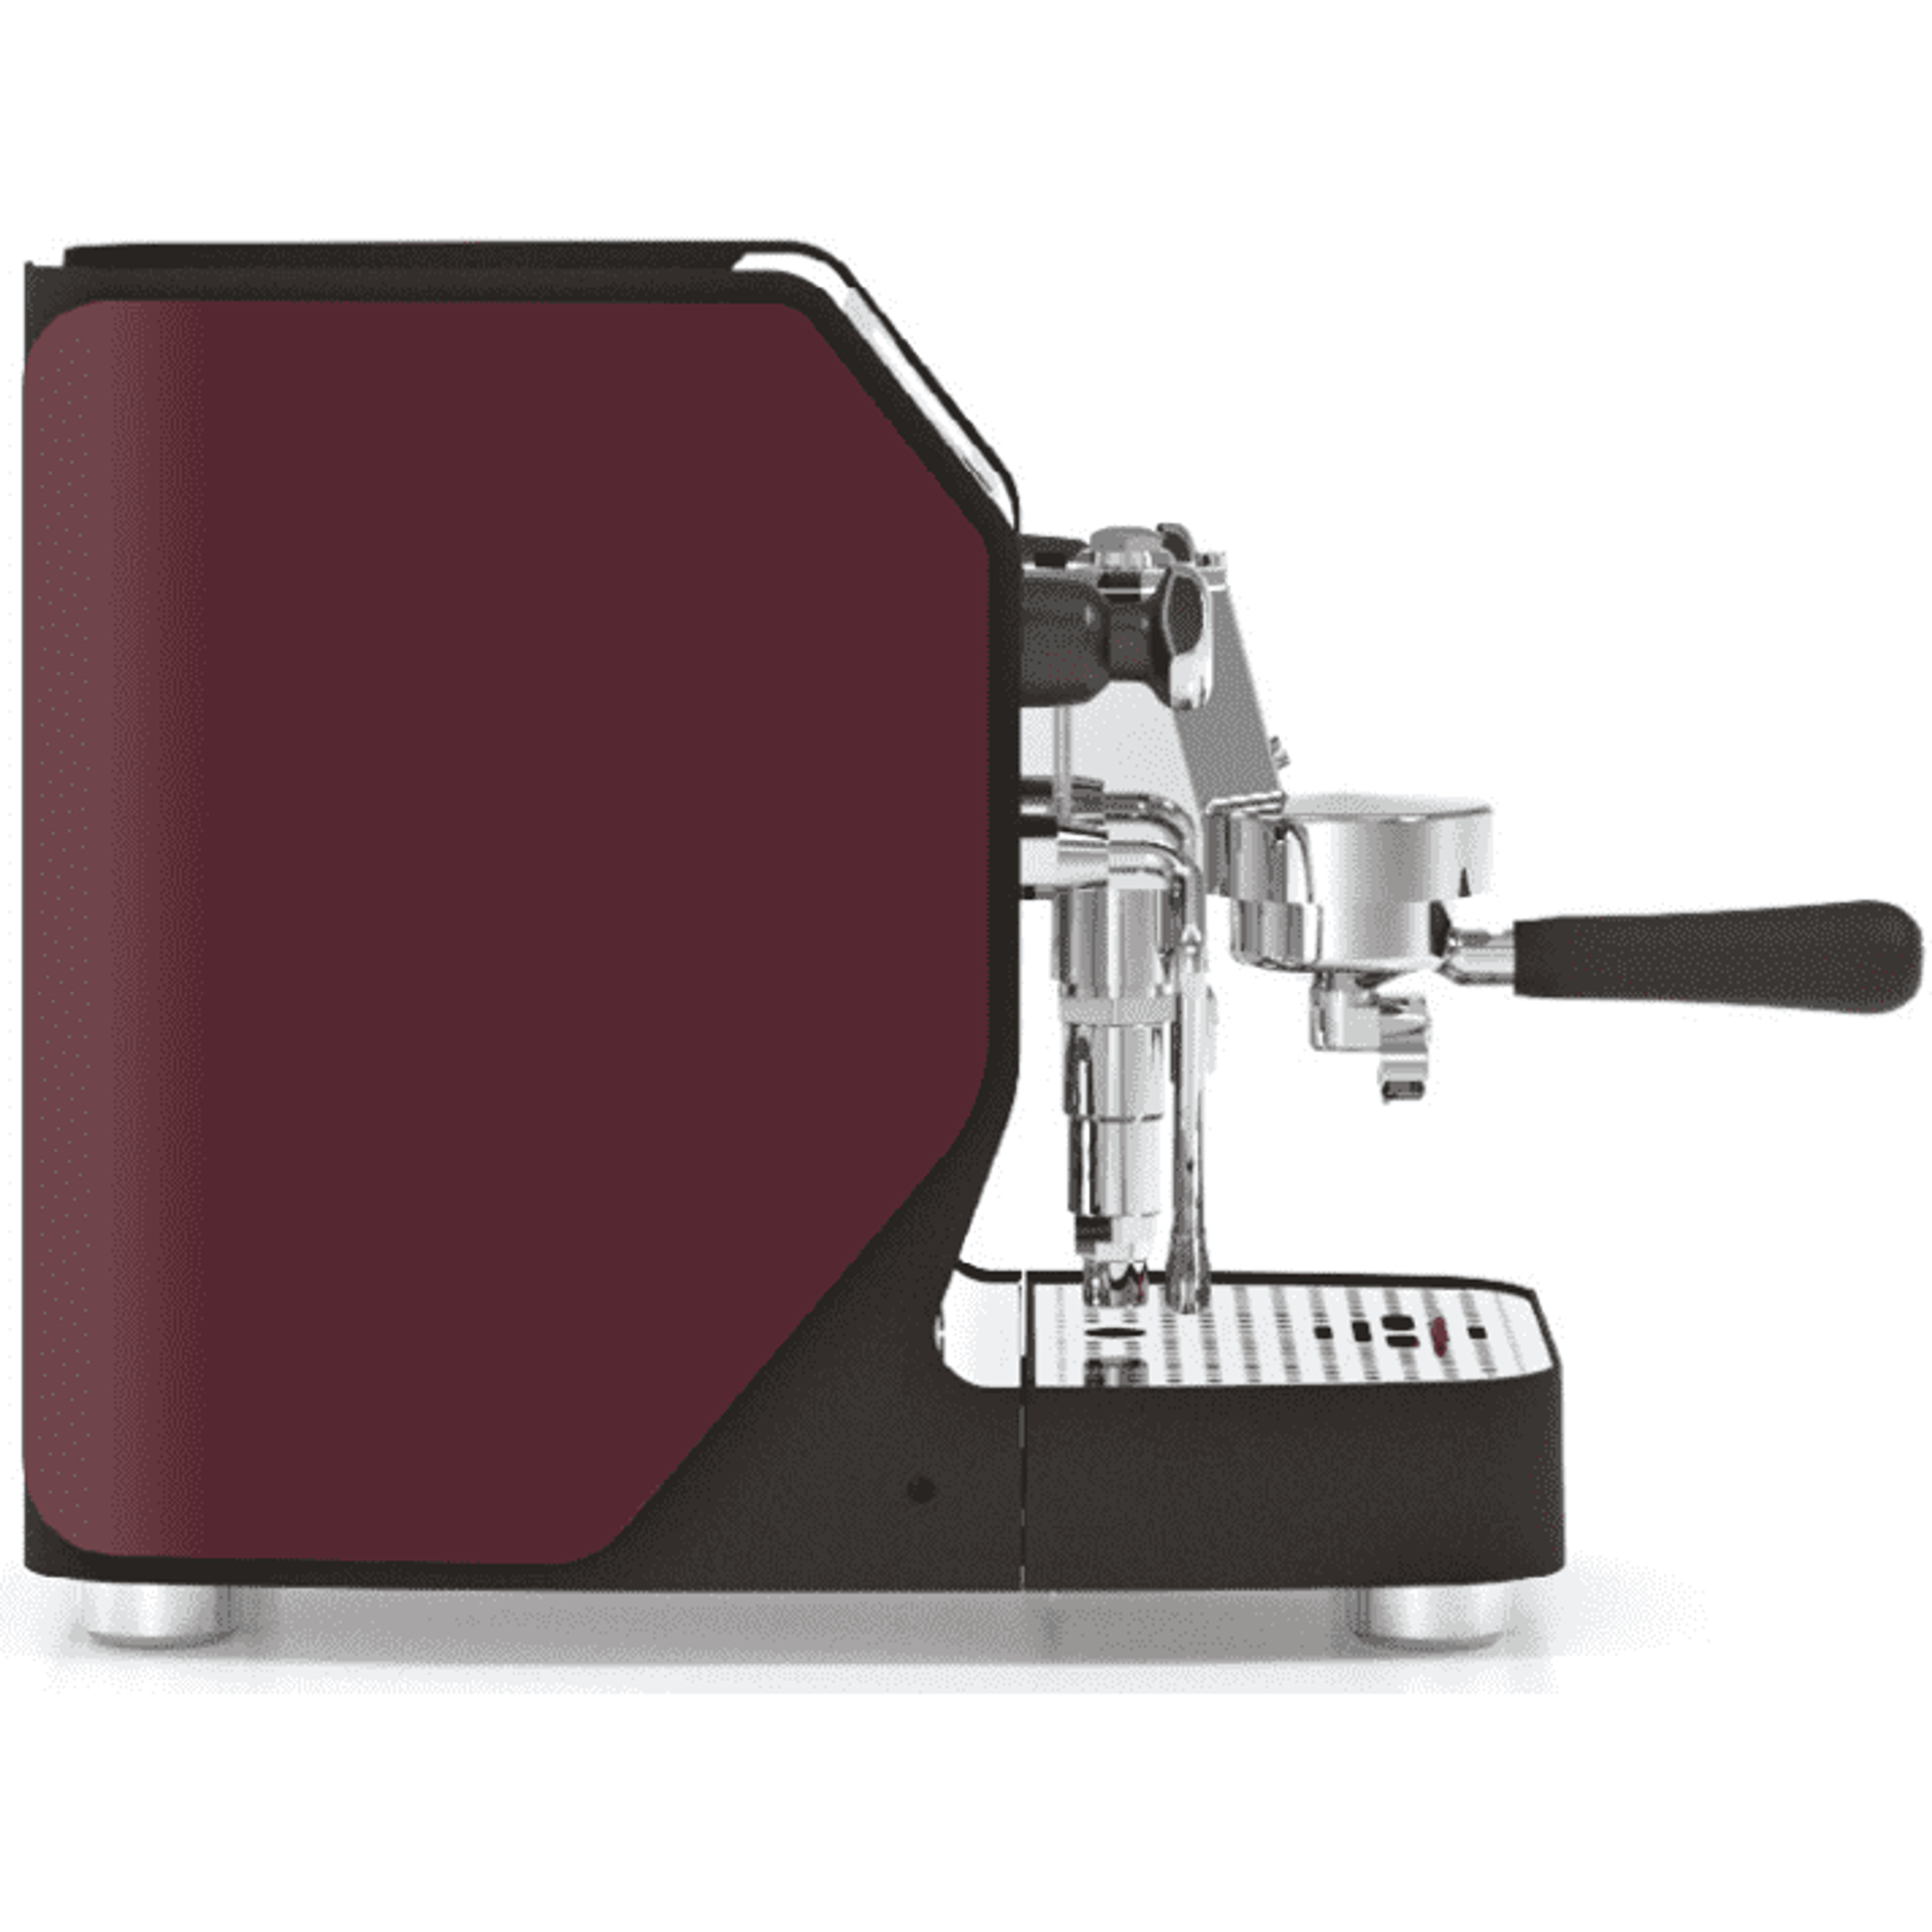 Vibiemme VBM New DOMOBAR Super Digital - Druckprofile, Dualboiler, Getriebepumpe, verschiedene Farben Espressomaschinen VBM Bordeaux   - Rheinland.Coffee